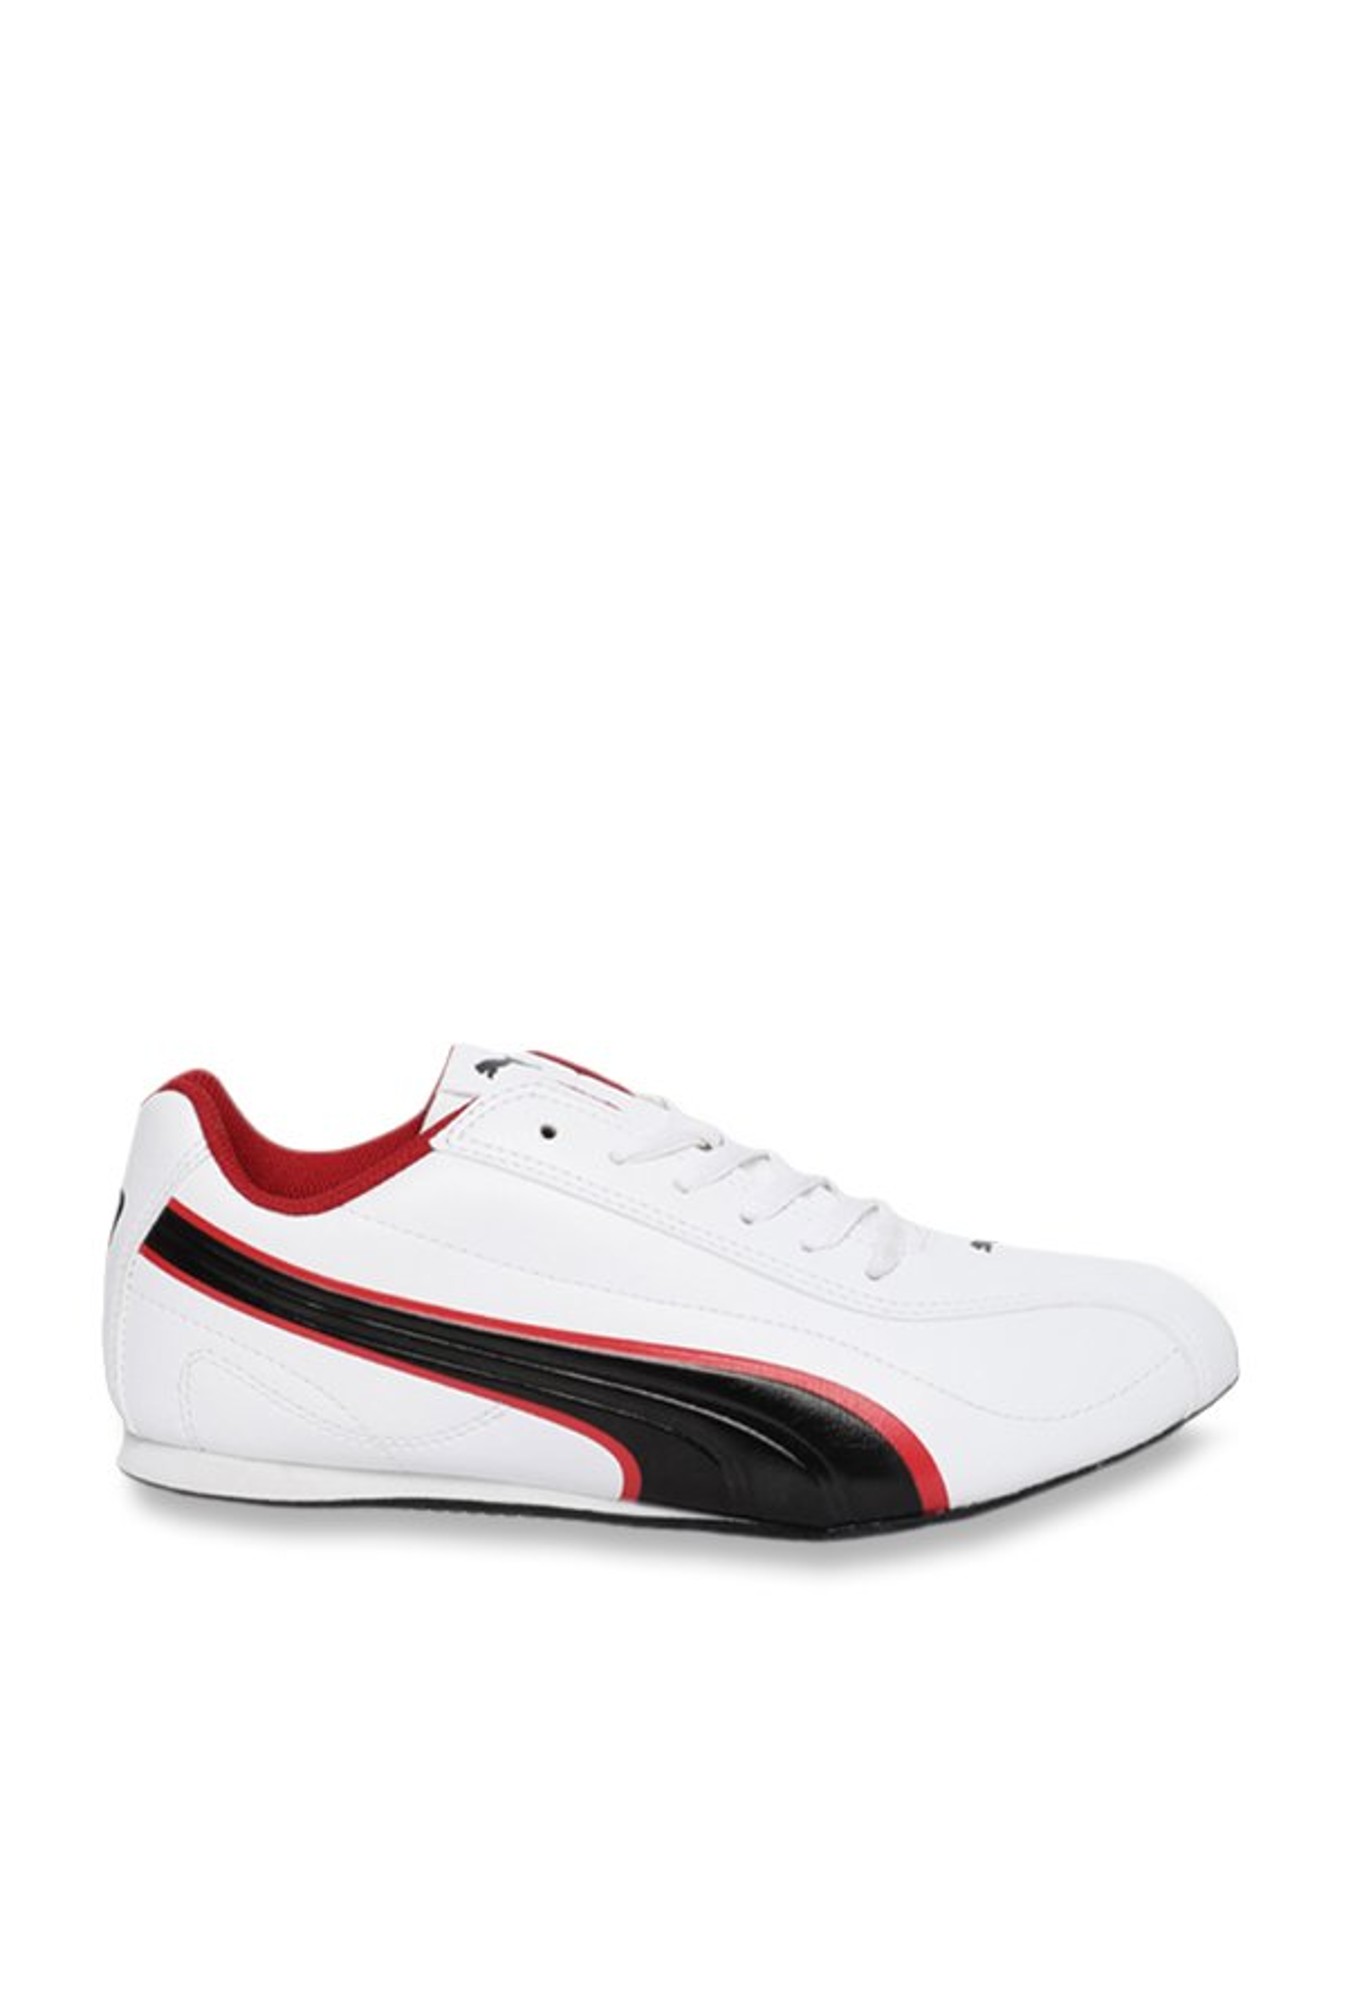 Buy Puma Wirko White Sneakers for Men 